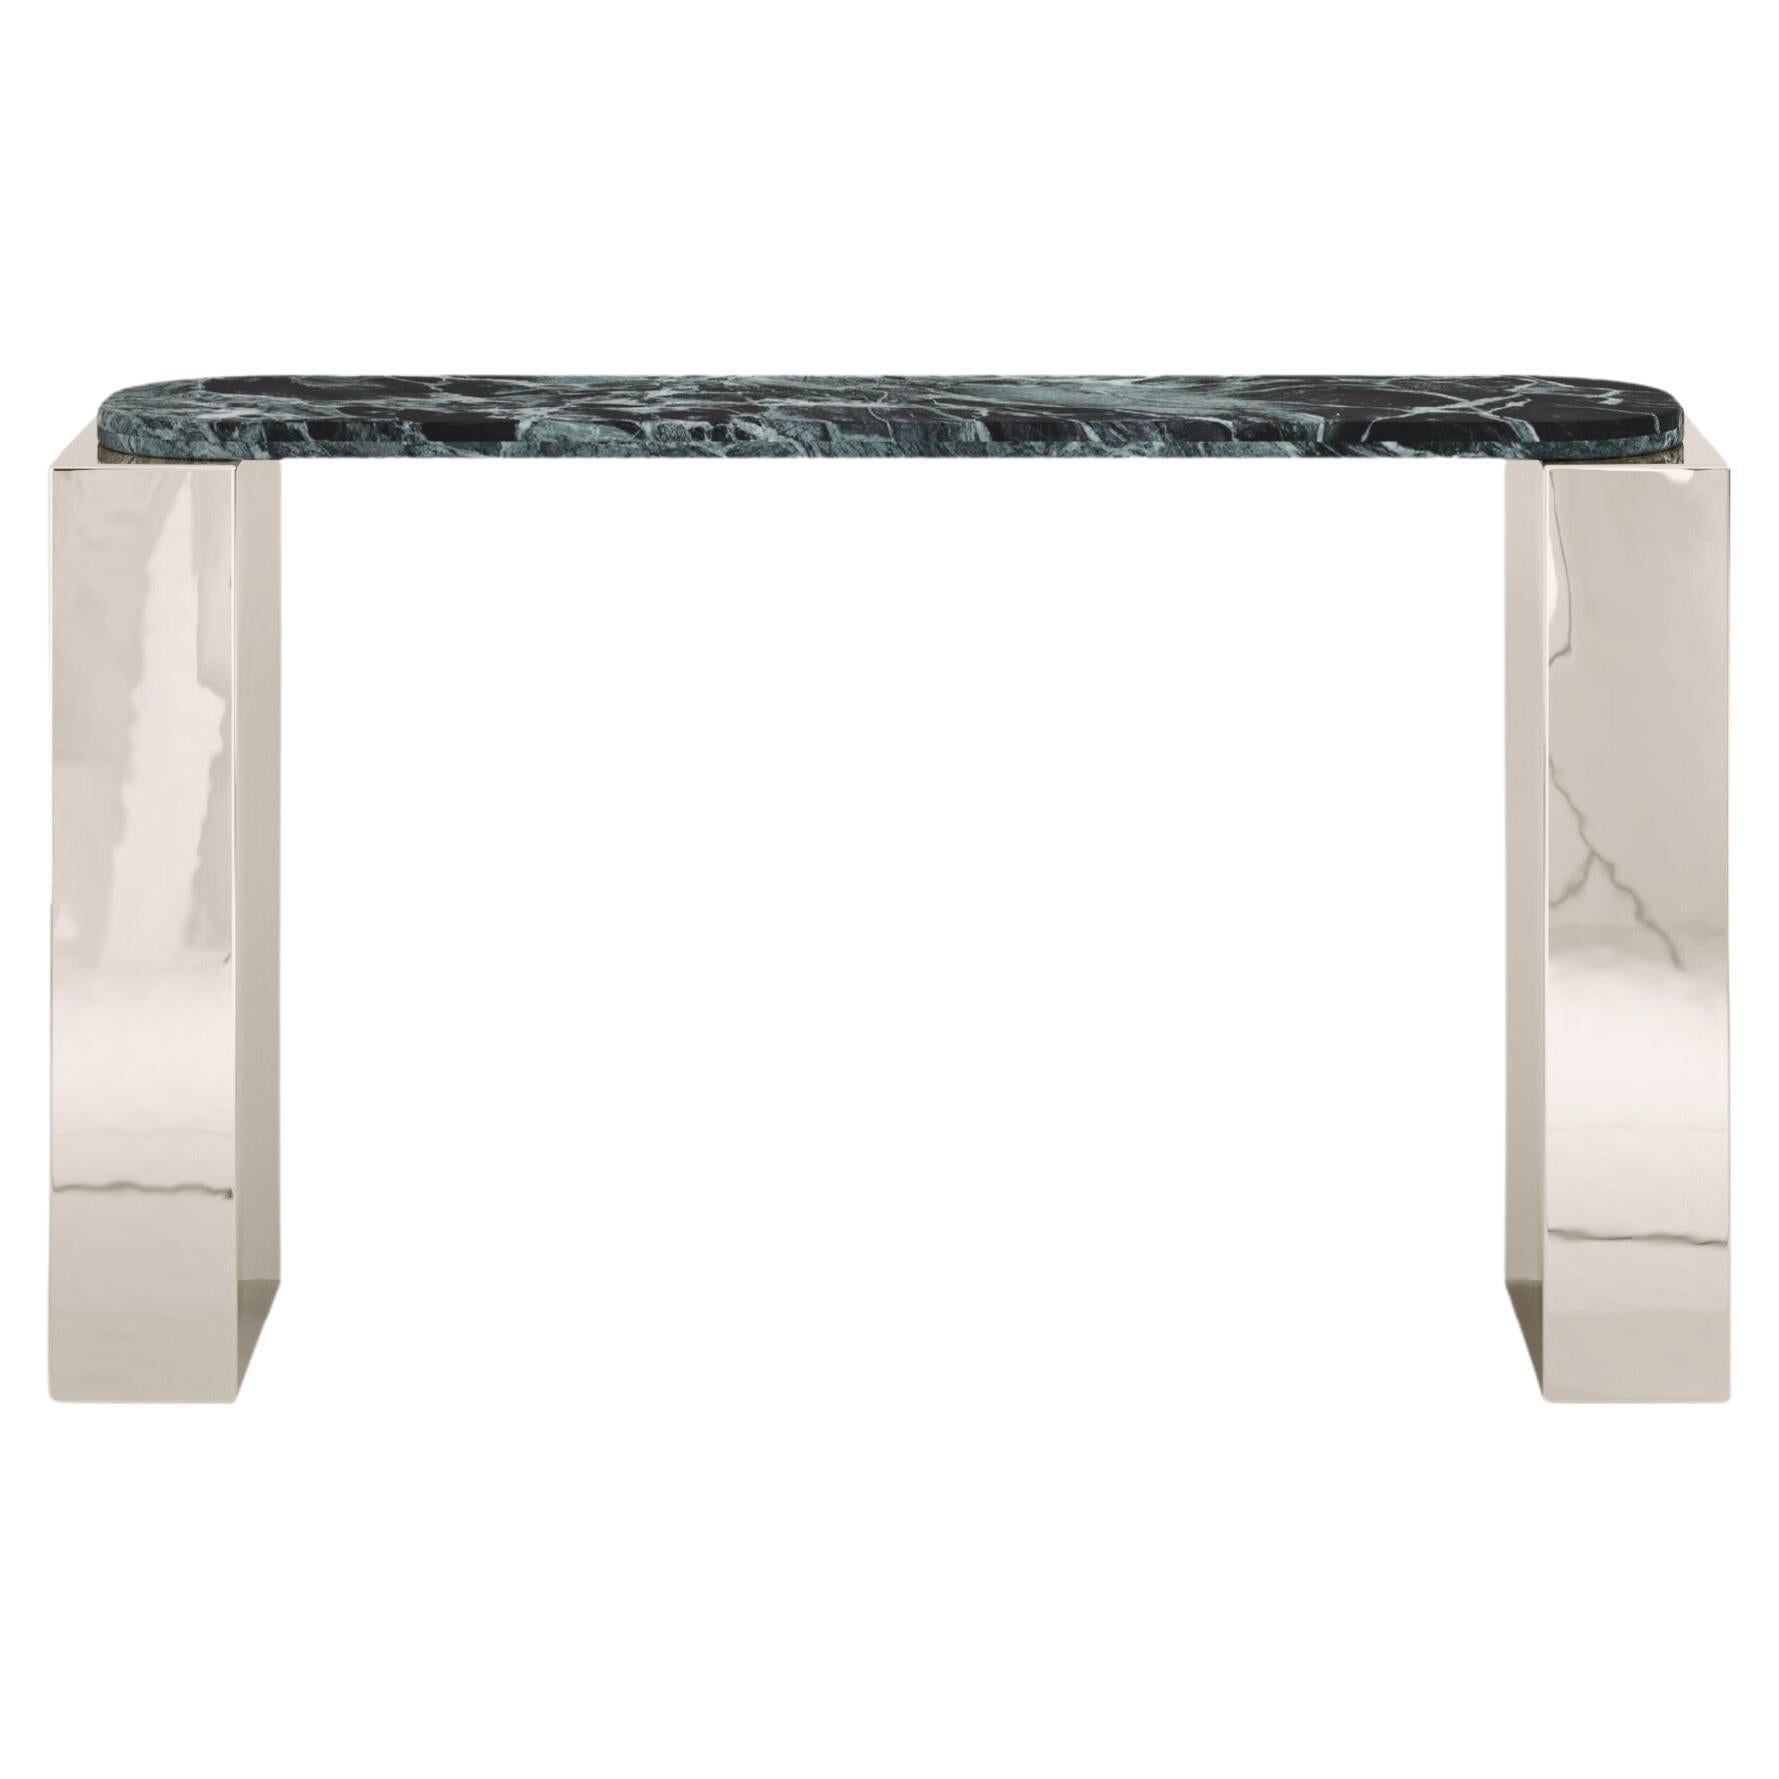 FORM(LA) Cubo Console Table 62”L x 17”W x 36”H Verde Alpi Marble & Chrome For Sale